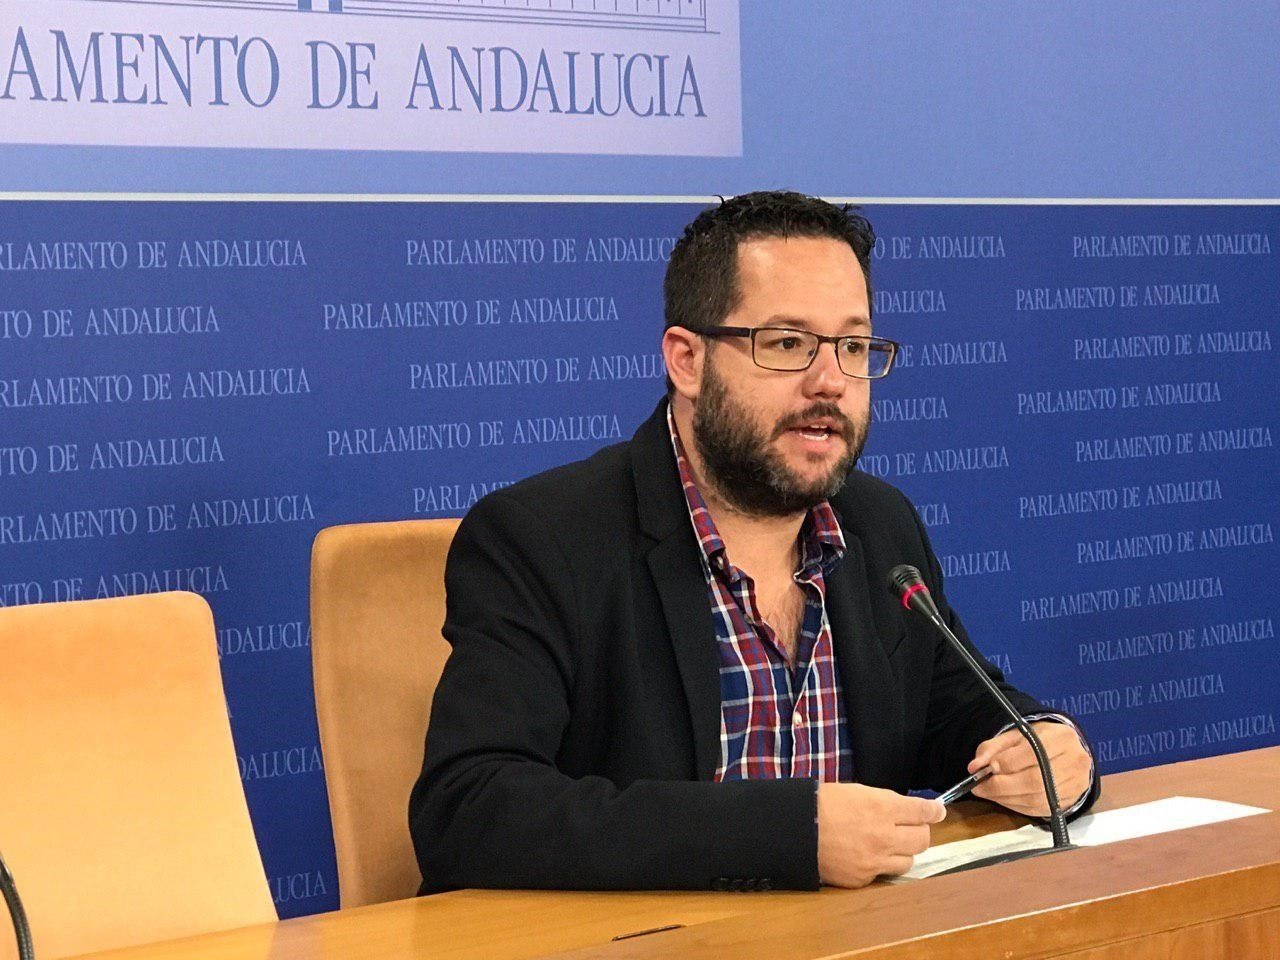 Un dirigent d'Adelante Andalucía: "El cas CDR fa pudor d'altres muntatges policials coneguts"